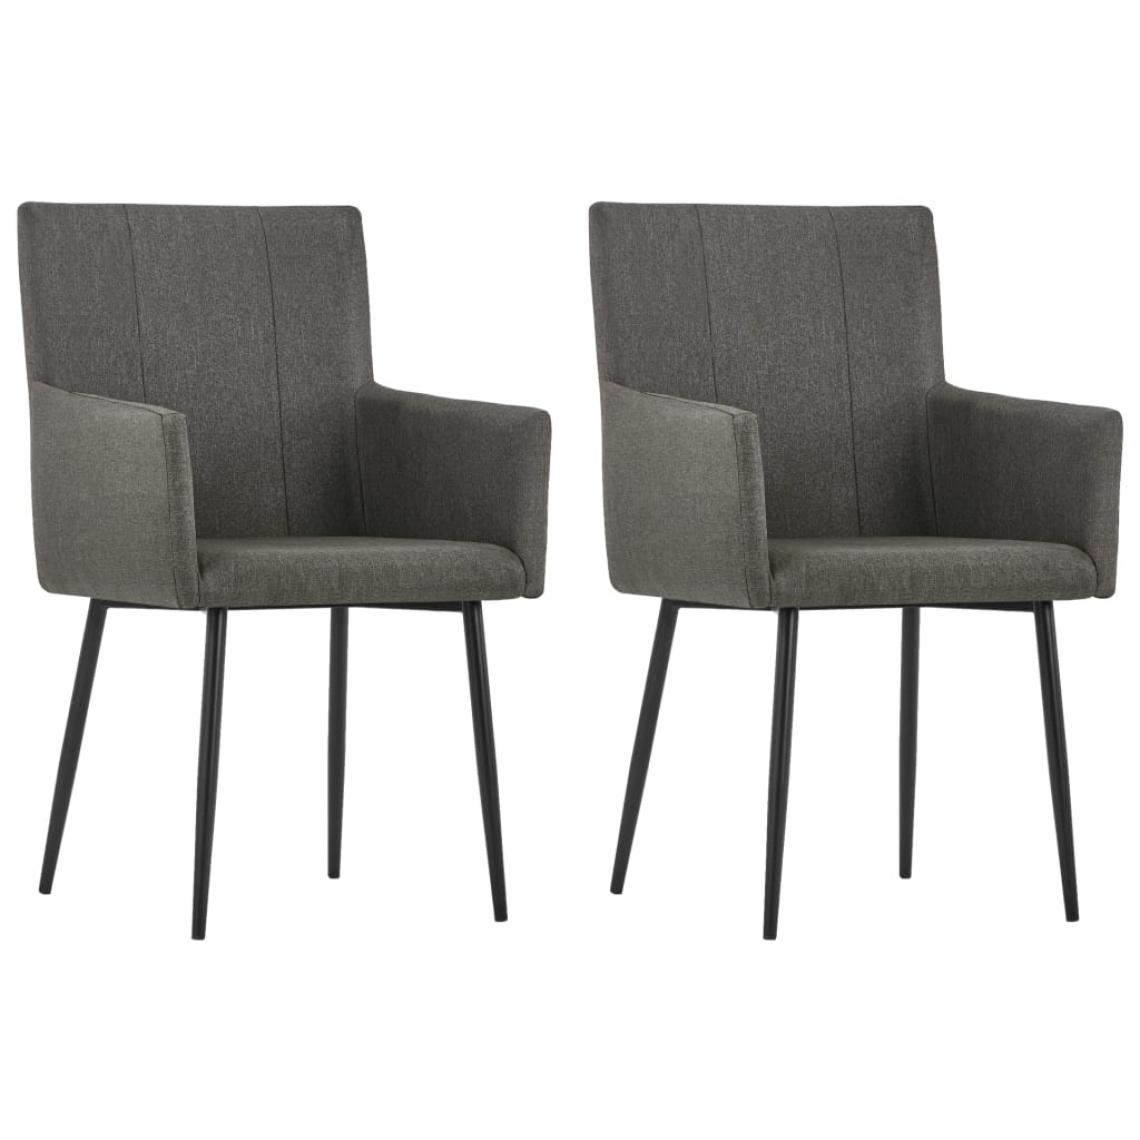 Decoshop26 - Lot de 2 chaises de salle à manger cuisine avec accoudoirs design moderne tissu taupe CDS020149 - Chaises